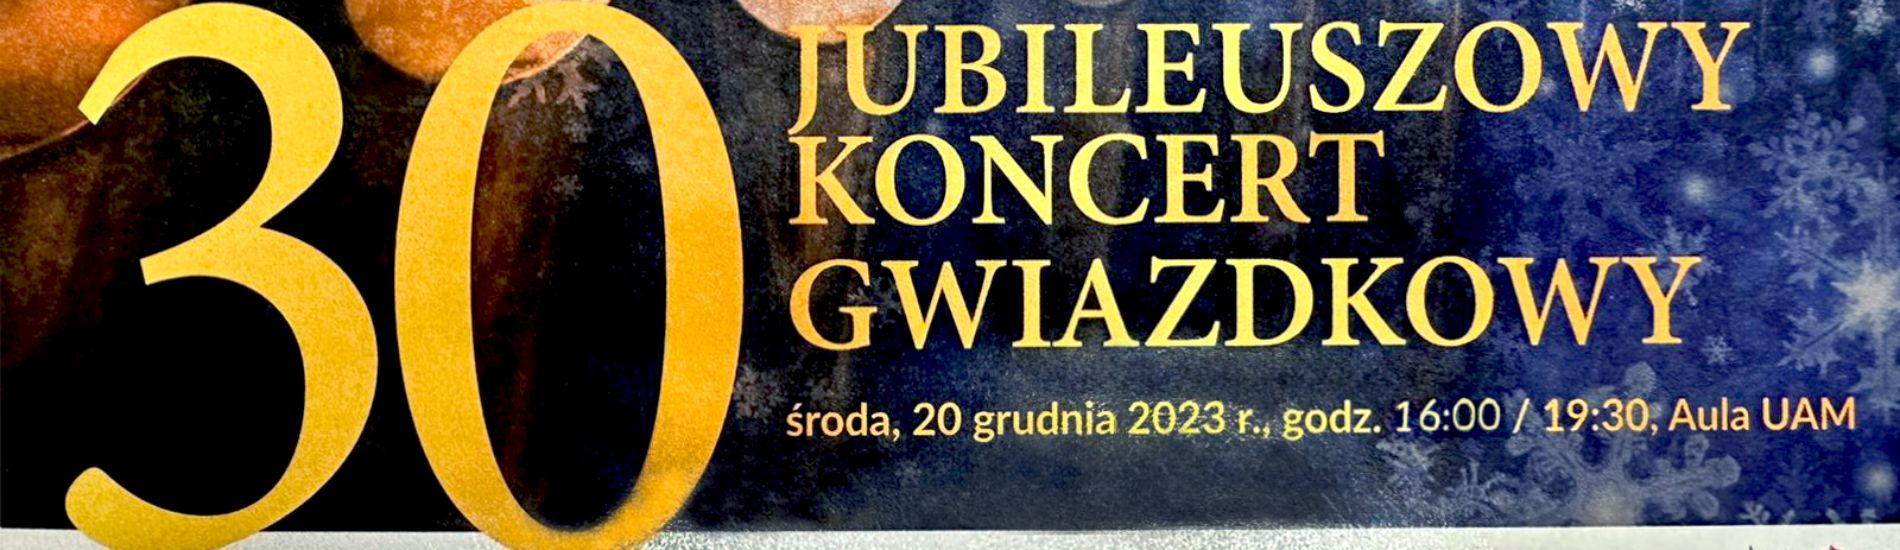 Wspieramy 30-lecie Jubileuszowego Koncertu Gwiazdkowego!